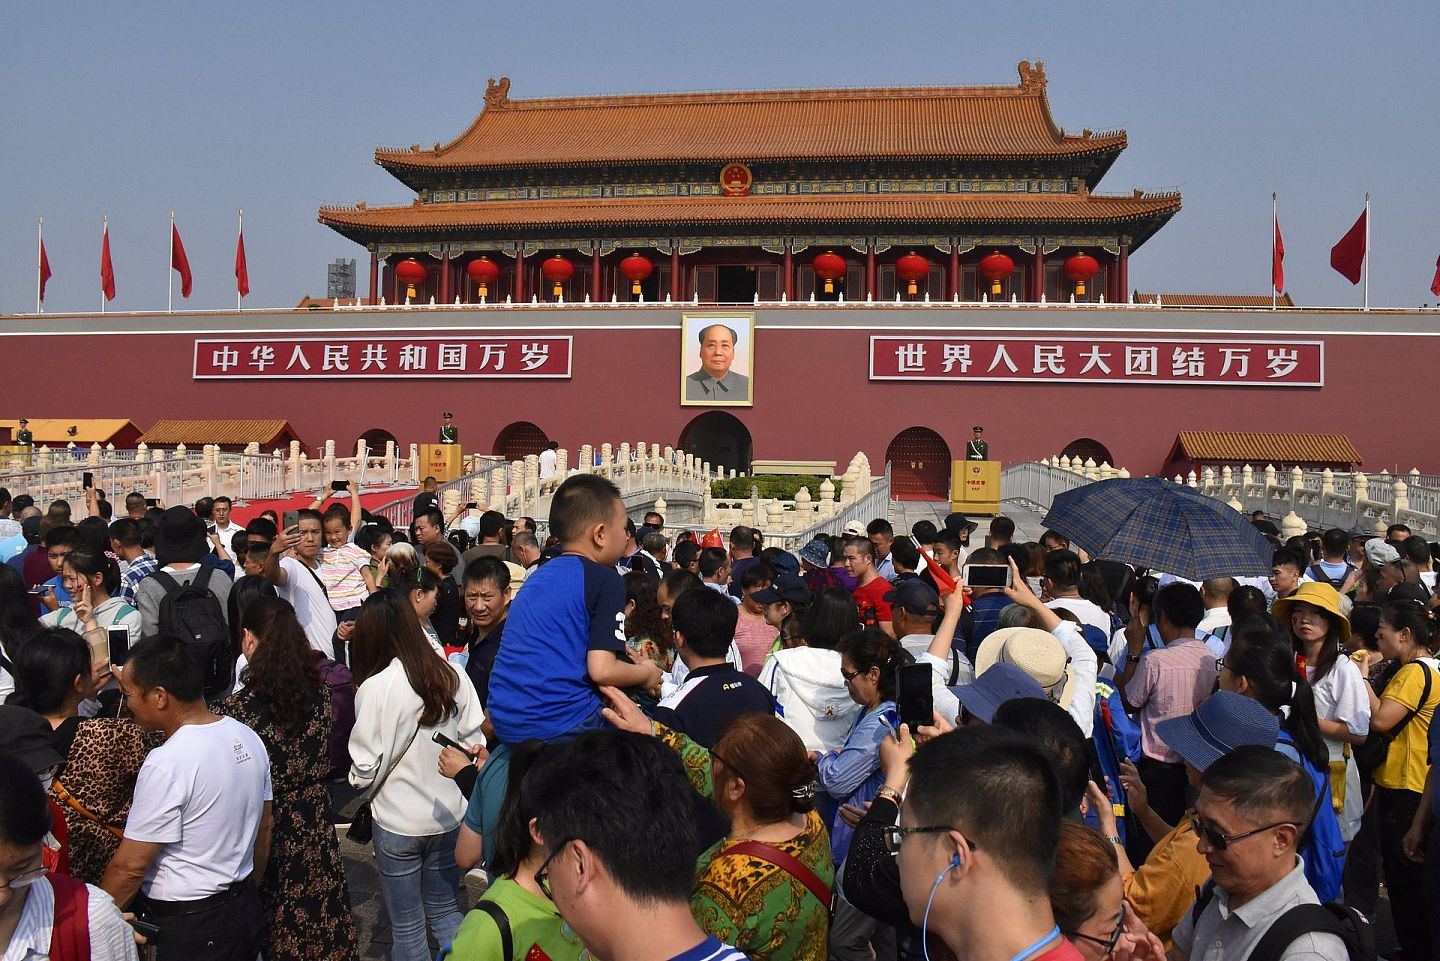 主旋律影片越来越强势的背景是，中国近年来的民族主义情绪日渐高涨。中国文旅部称，“爱国主旋律”、“红色旅游”引领2019年的国庆假日旅游市场。调查表明，78.84%的游客参与了各式国庆庆祝活动。（视觉中国）